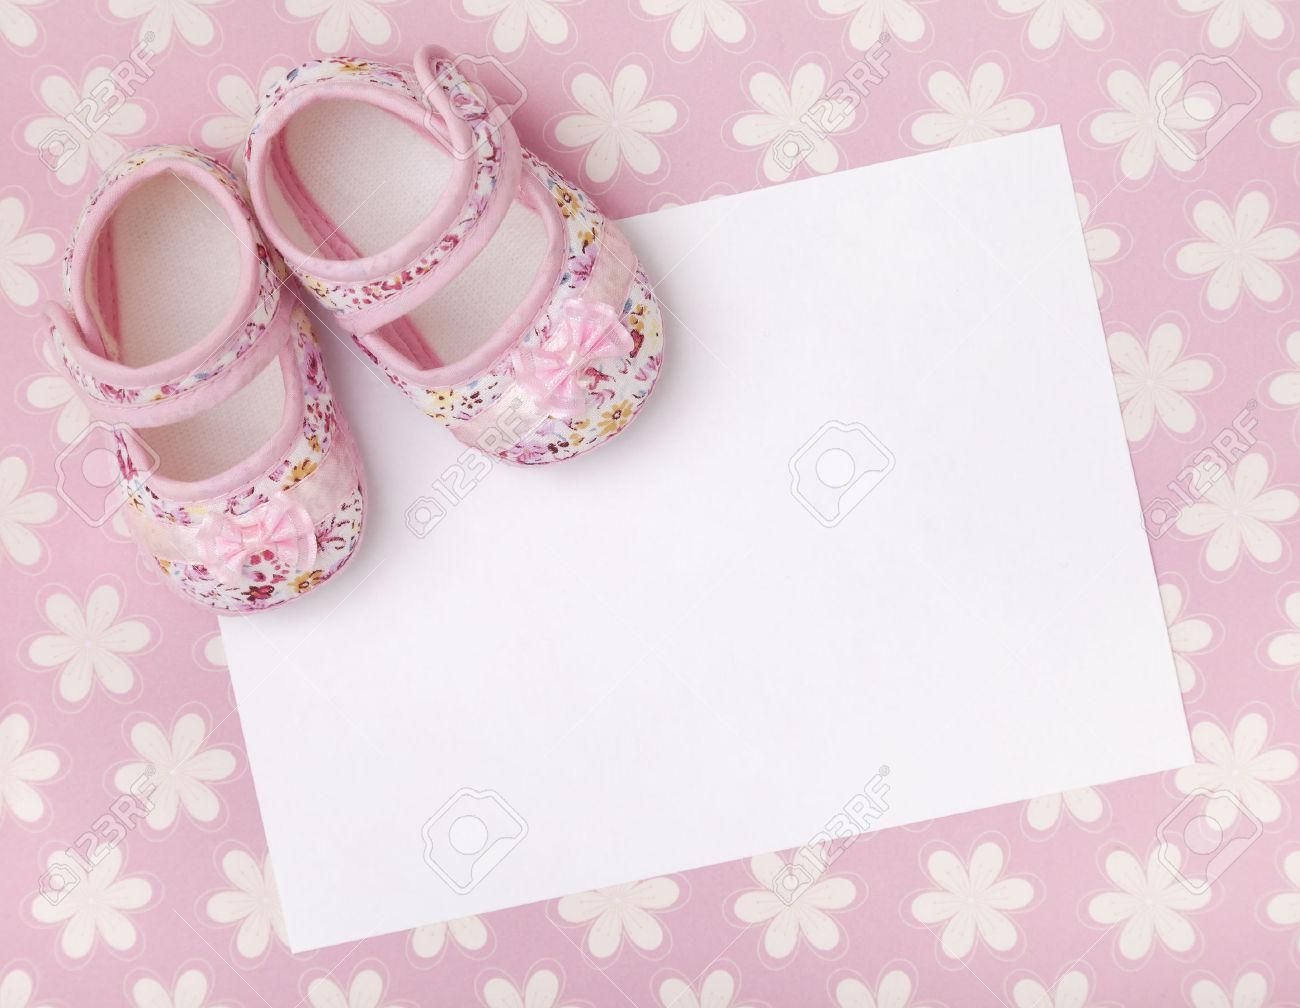 赤ちゃんの壁紙デザイン,ピンク,製品,履物,靴,パターン